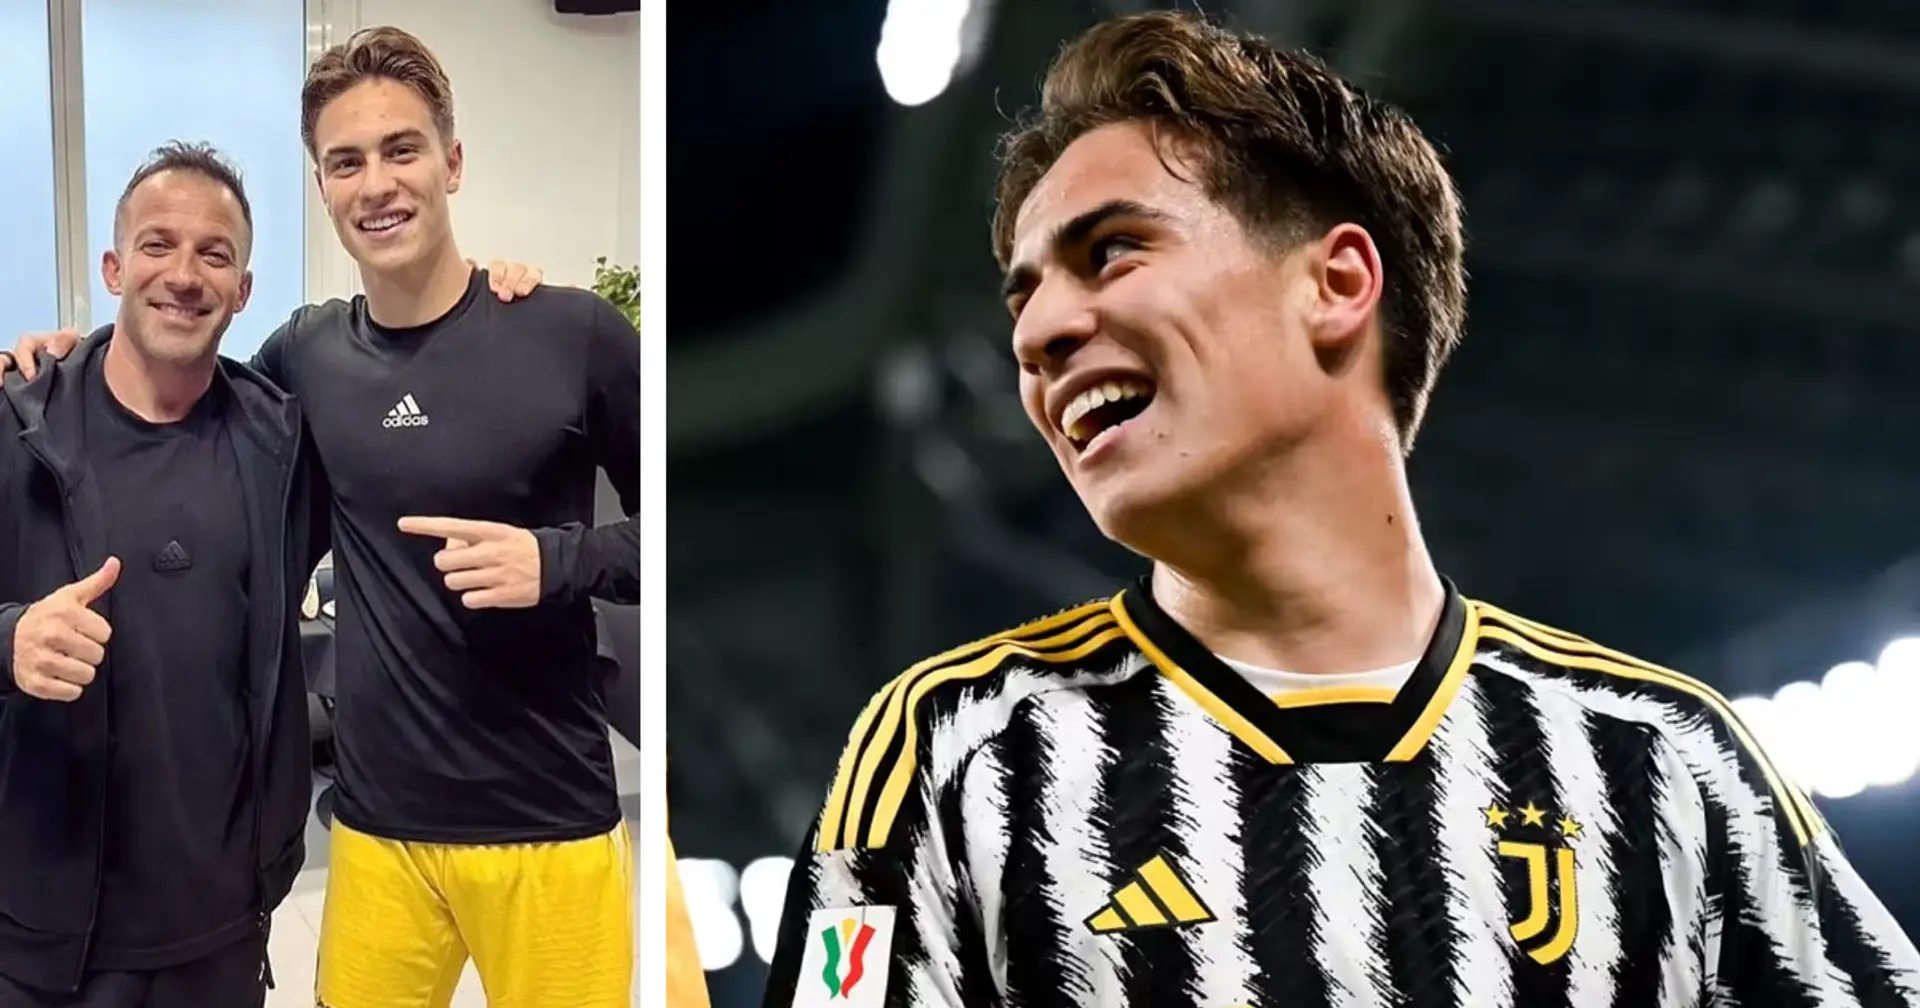 "L'idolo e la promessa insieme", lo scatto social di Yildiz scatena la fantasia dei tifosi della Juventus